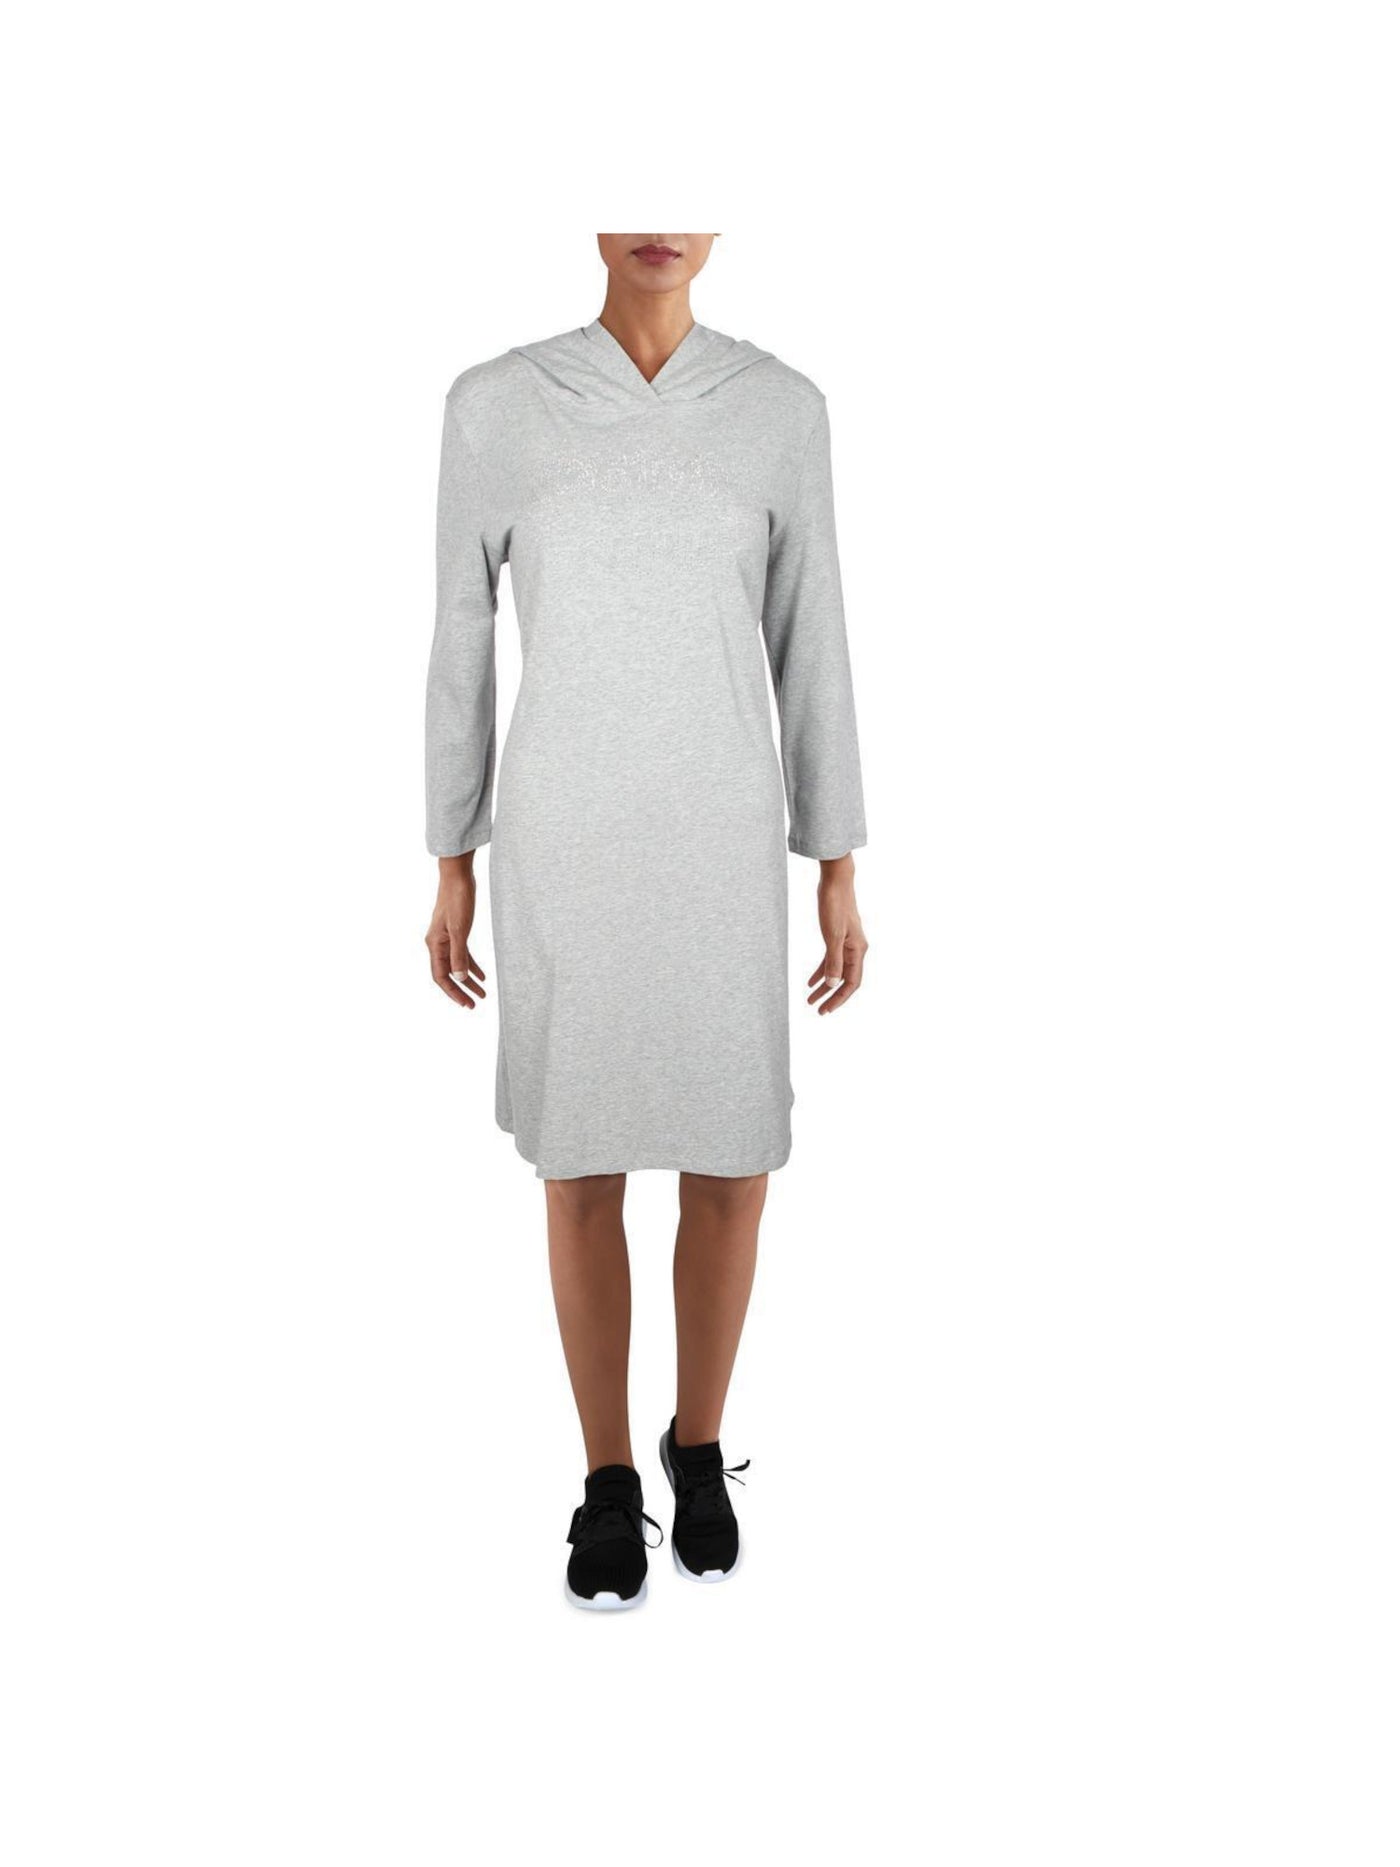 CALVIN KLEIN Womens Gray Heather Long Sleeve Knee Length T-Shirt Dress S